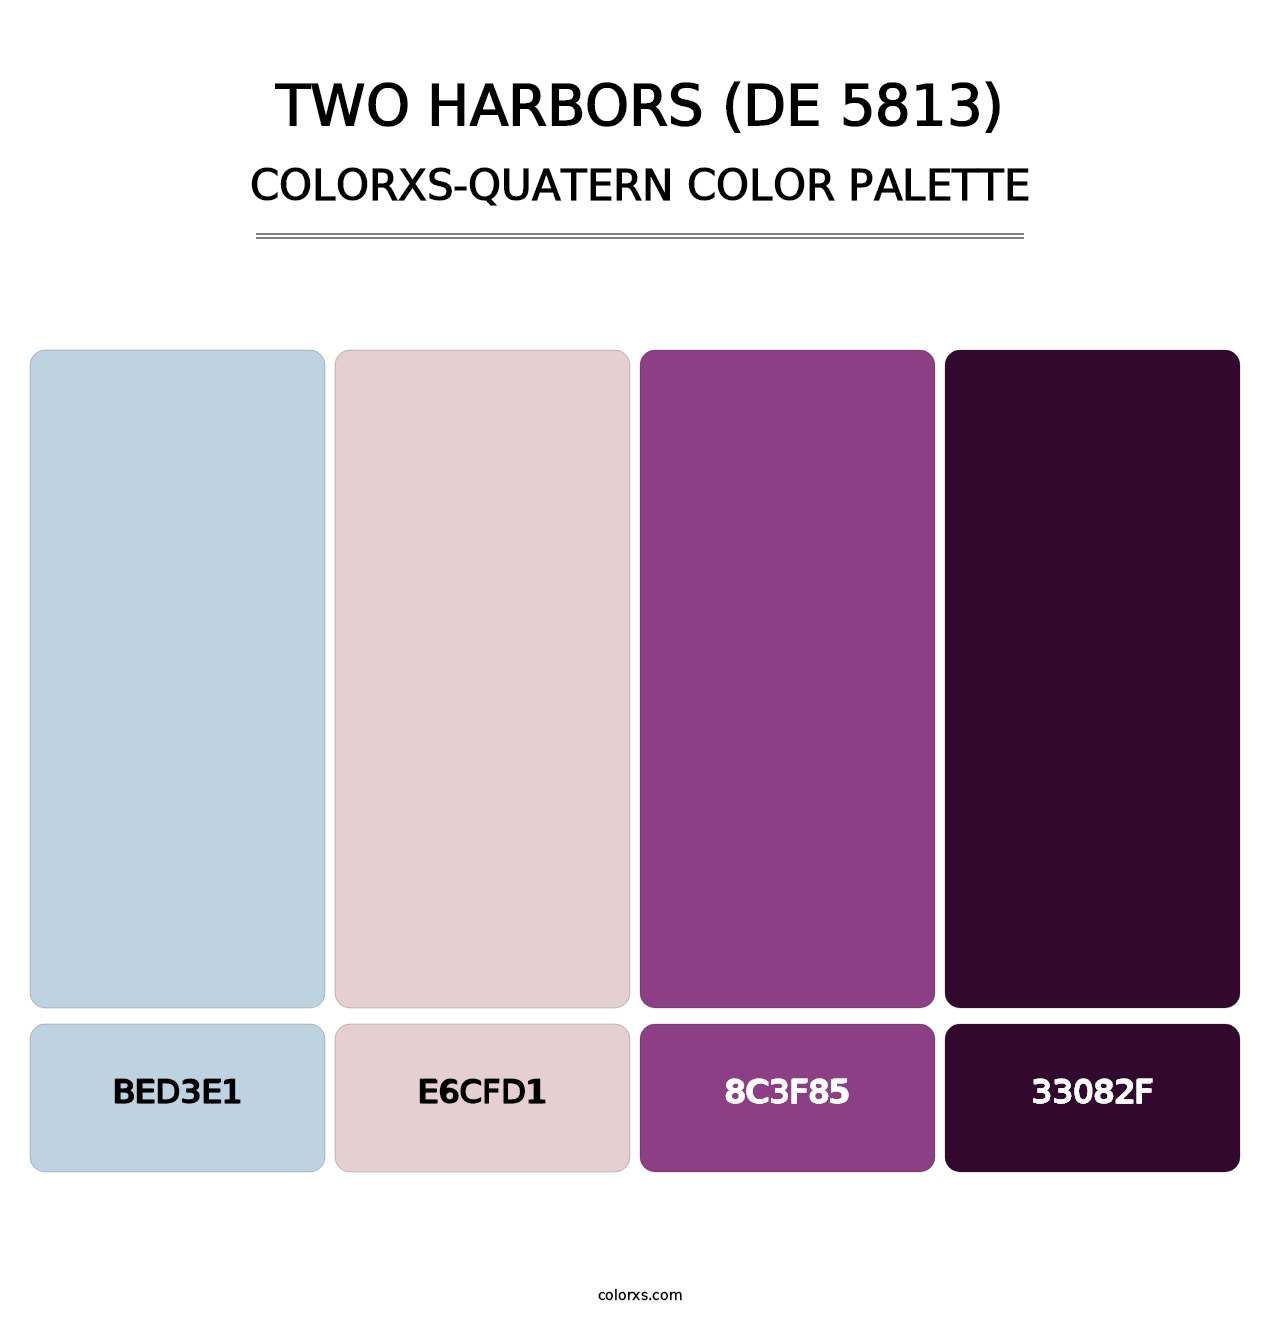 Two Harbors (DE 5813) - Colorxs Quatern Palette